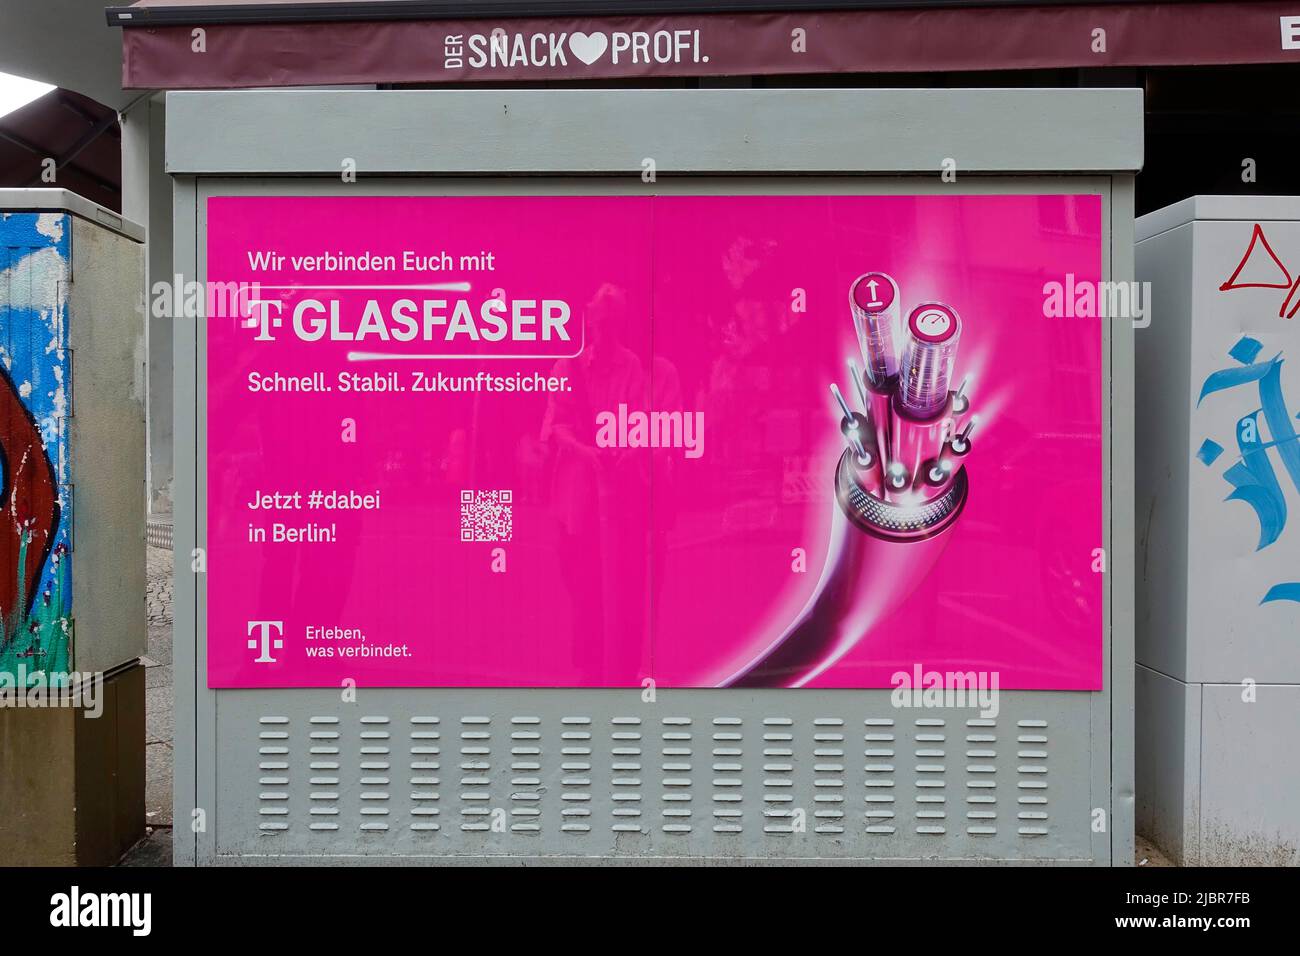 Publicité extérieure de Deutsche Telekom, Berlin, Allemagne Banque D'Images